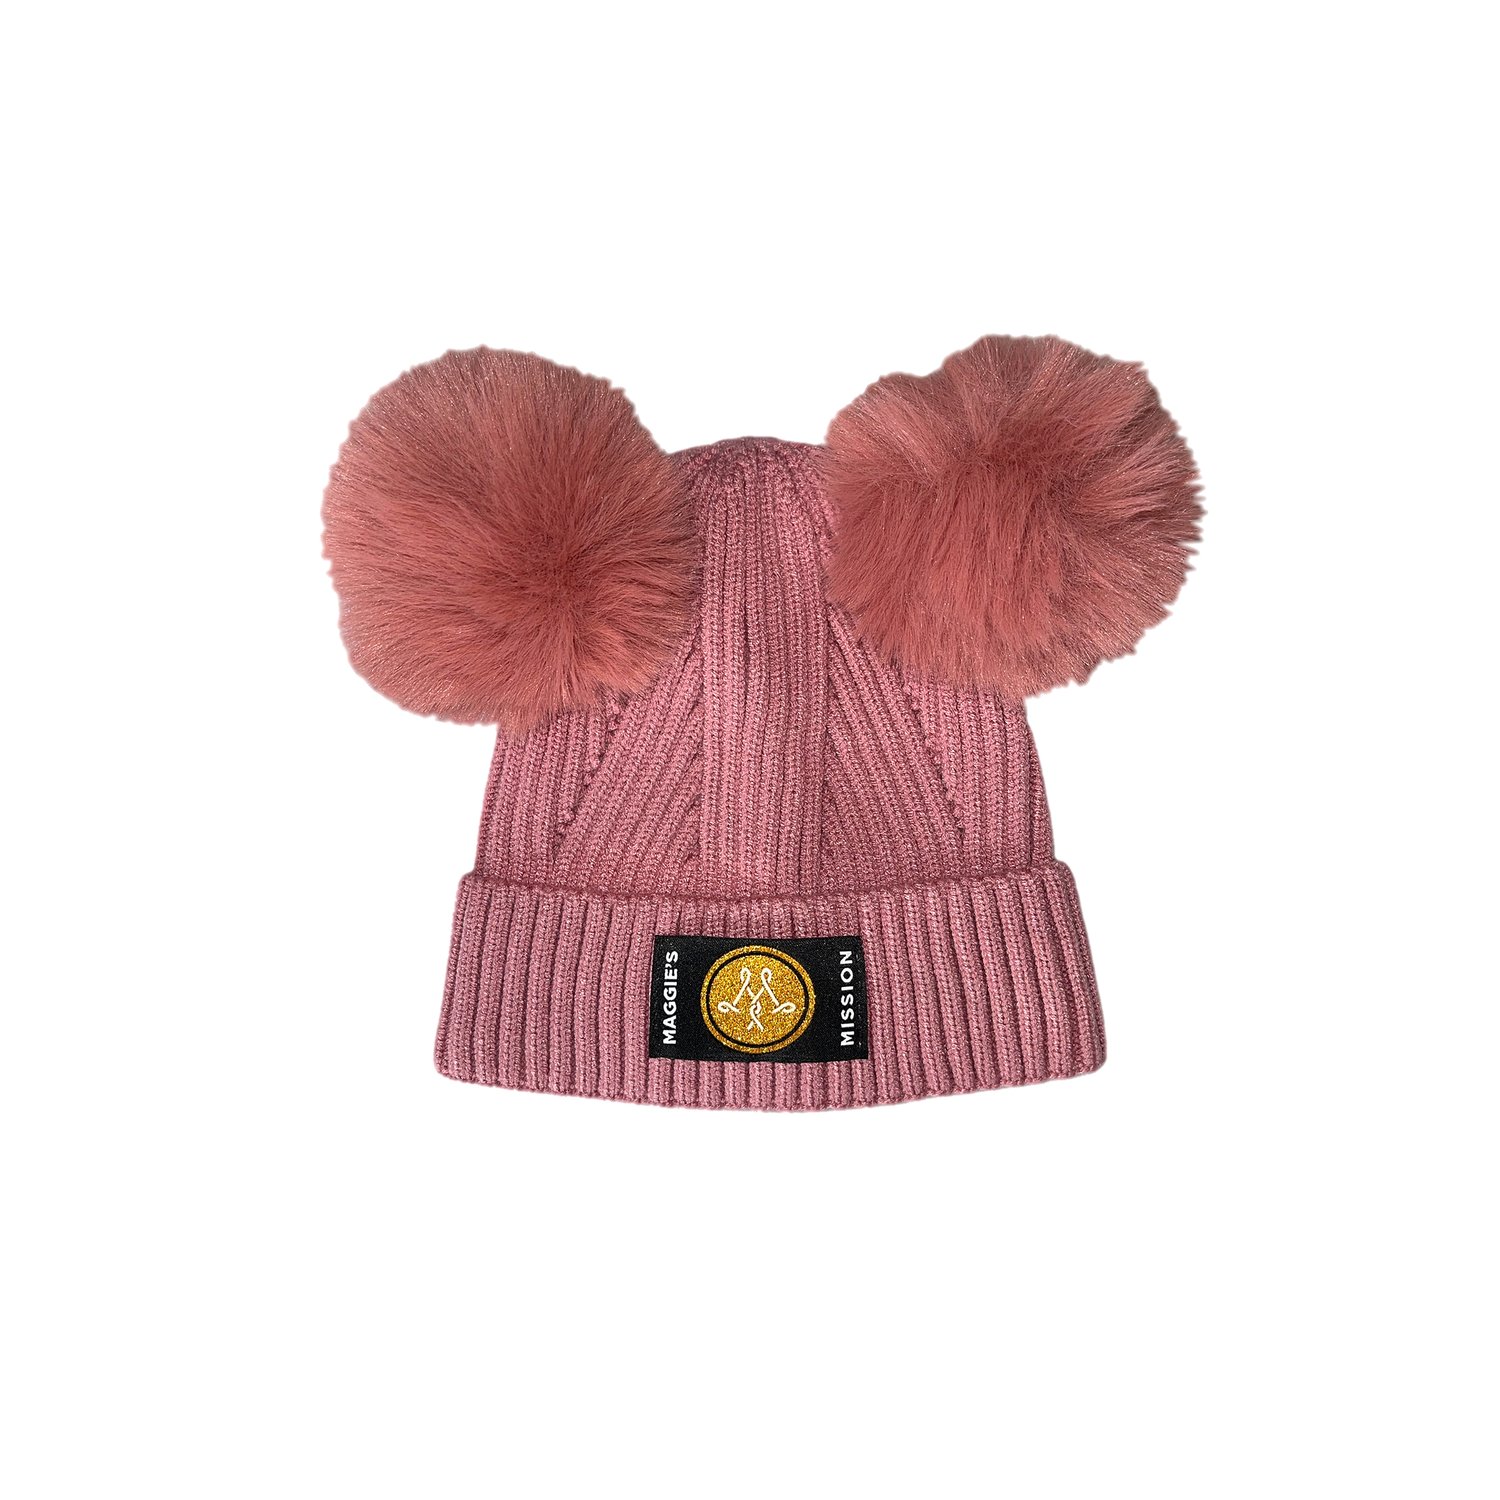 — Mission Pom Pom Maggie\'s Hat Maggie\'s Knit Mission Children\'s Pink